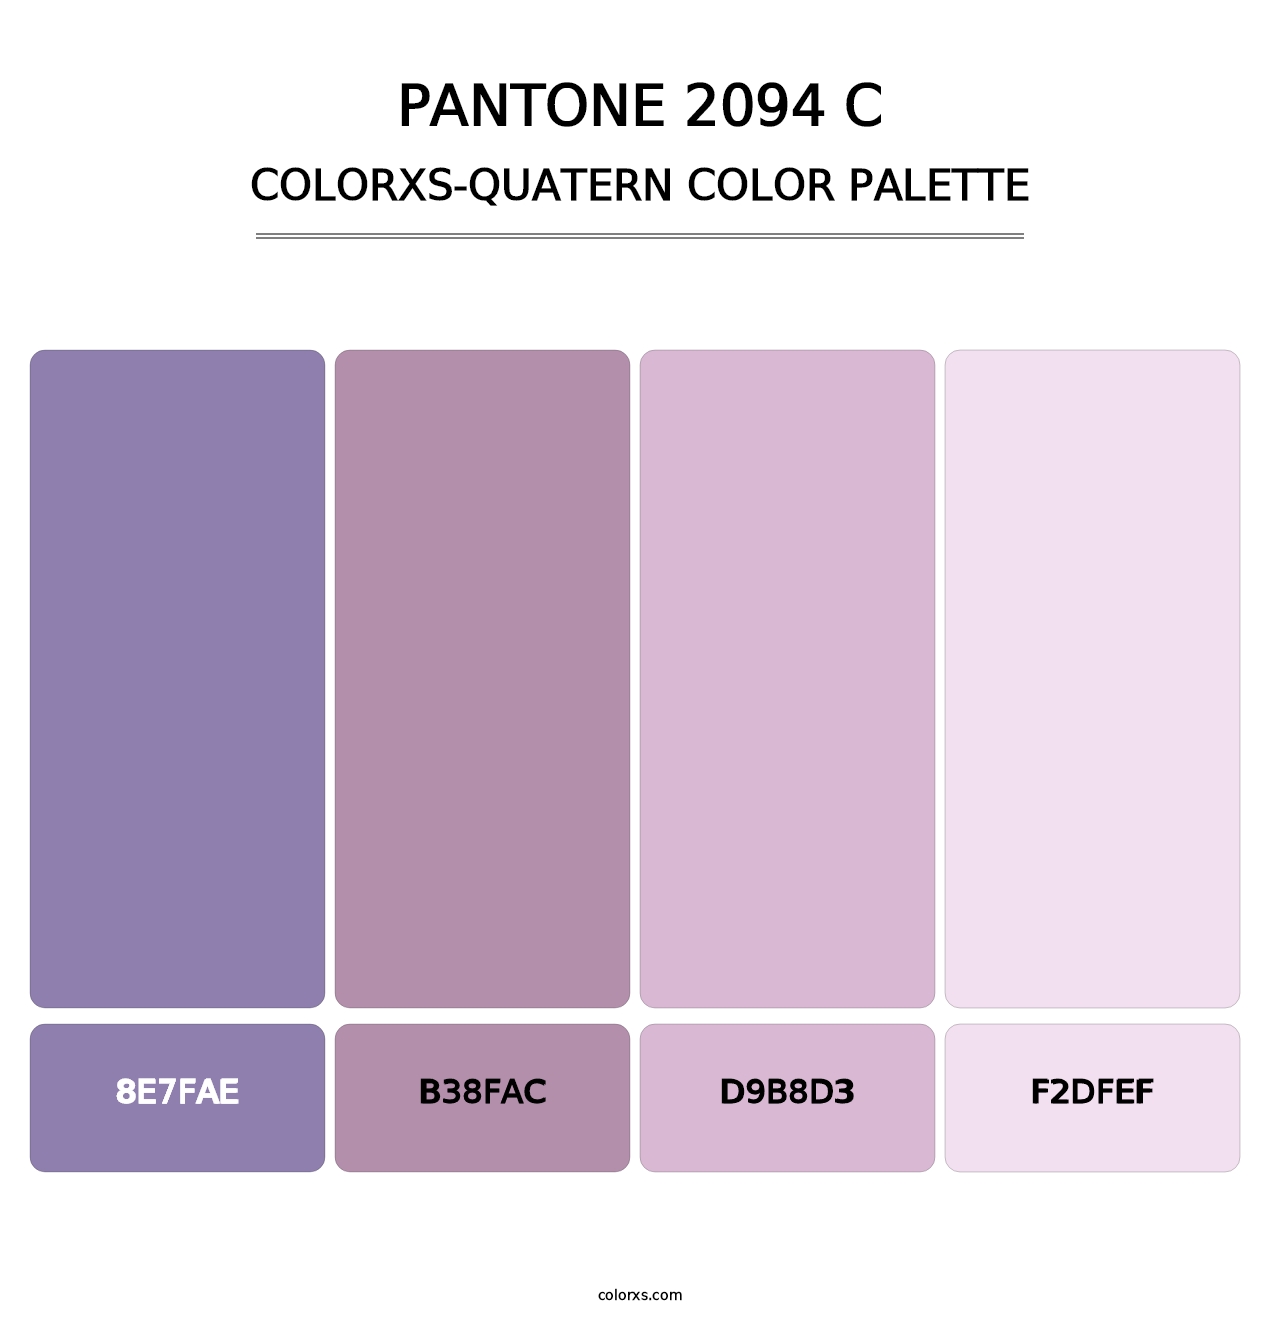 PANTONE 2094 C - Colorxs Quatern Palette